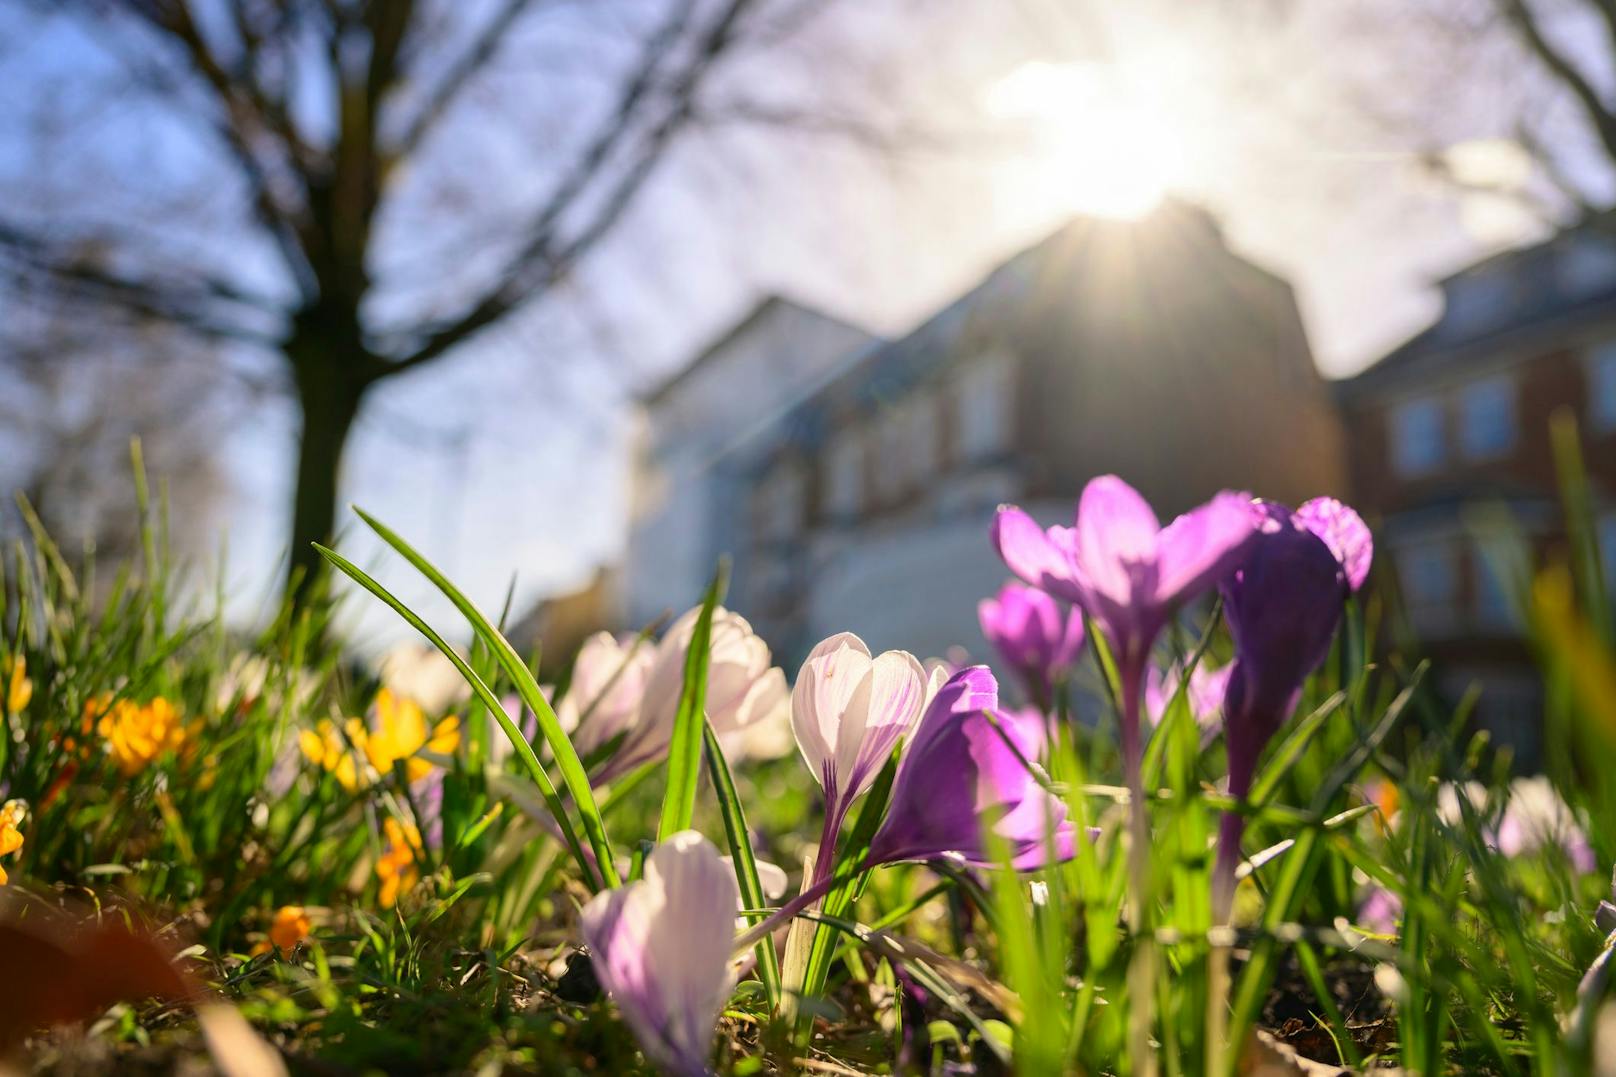 Frühlingserwachen in Österreich: Krokusse blühen bald in Hülle und Fülle auf.